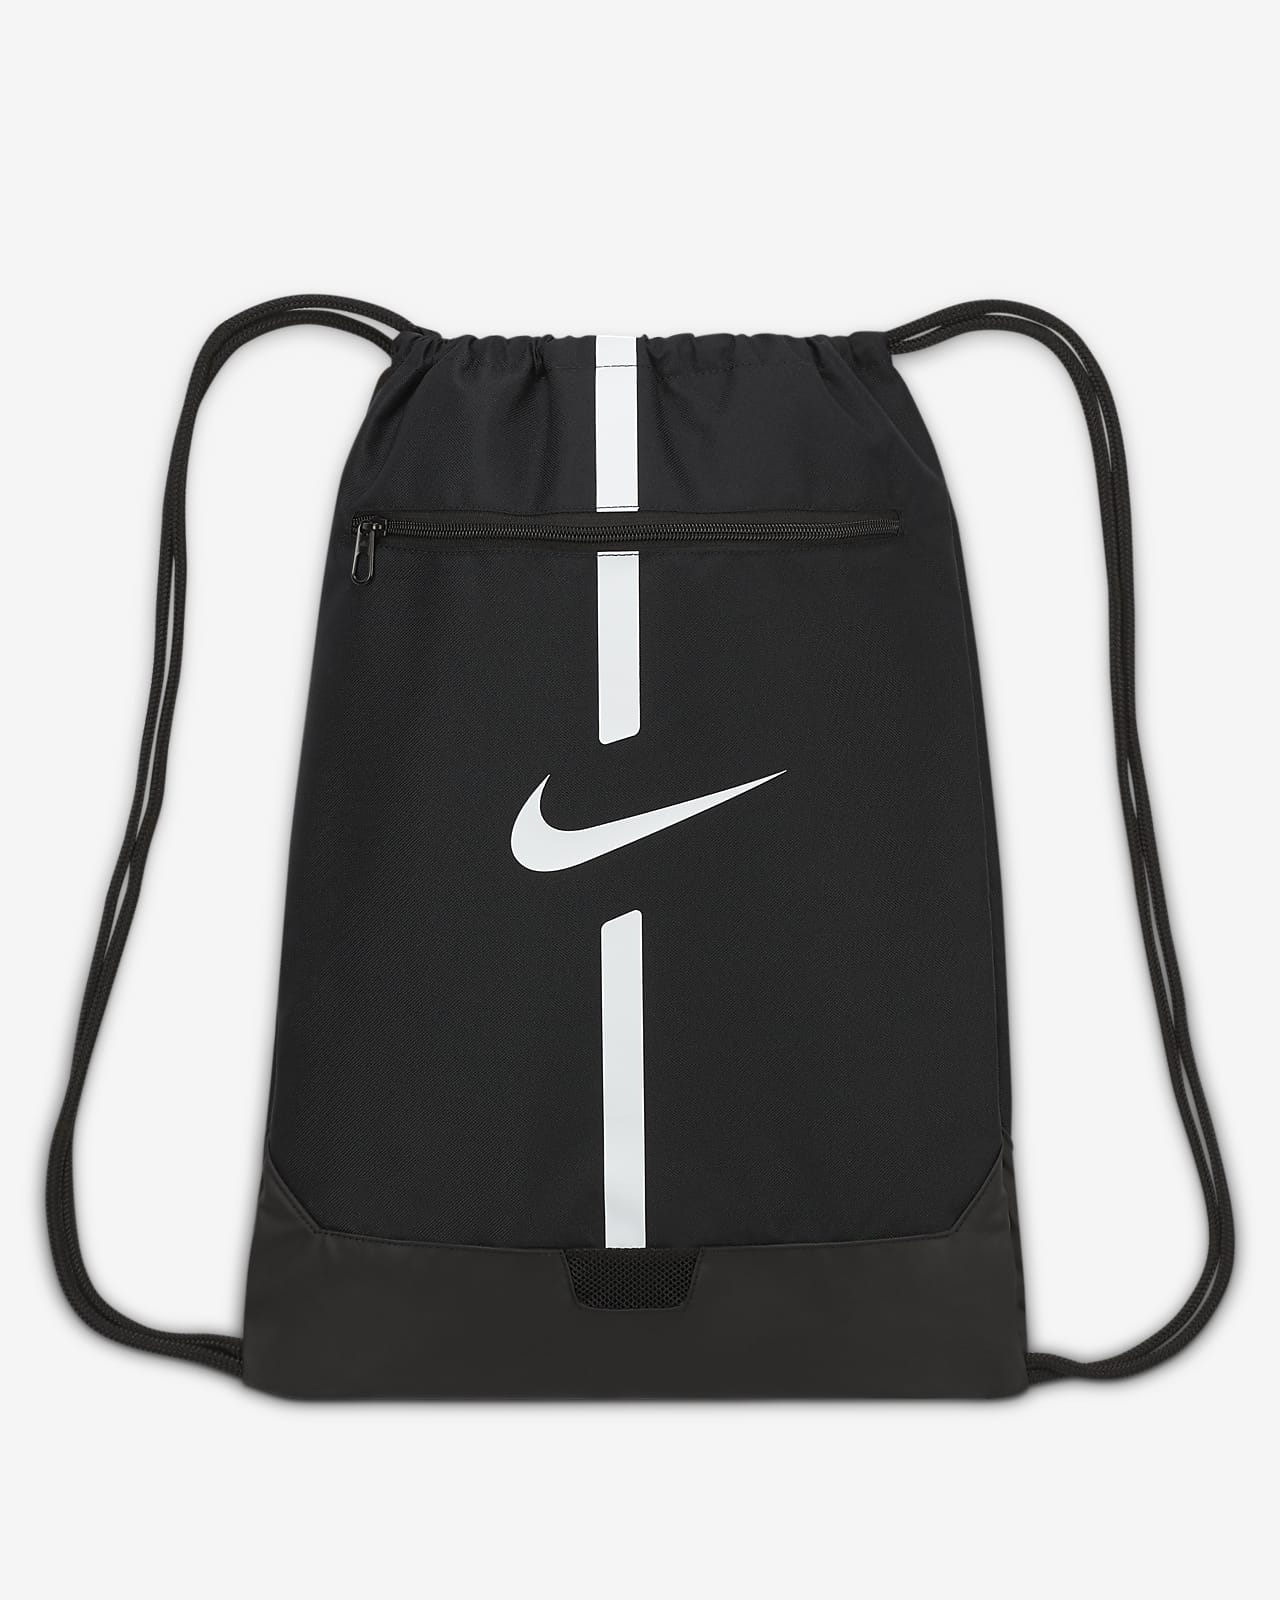 Σακίδιο γυμναστηρίου και ποδοσφαιρικής προπόνησης Nike Academy (18 L)